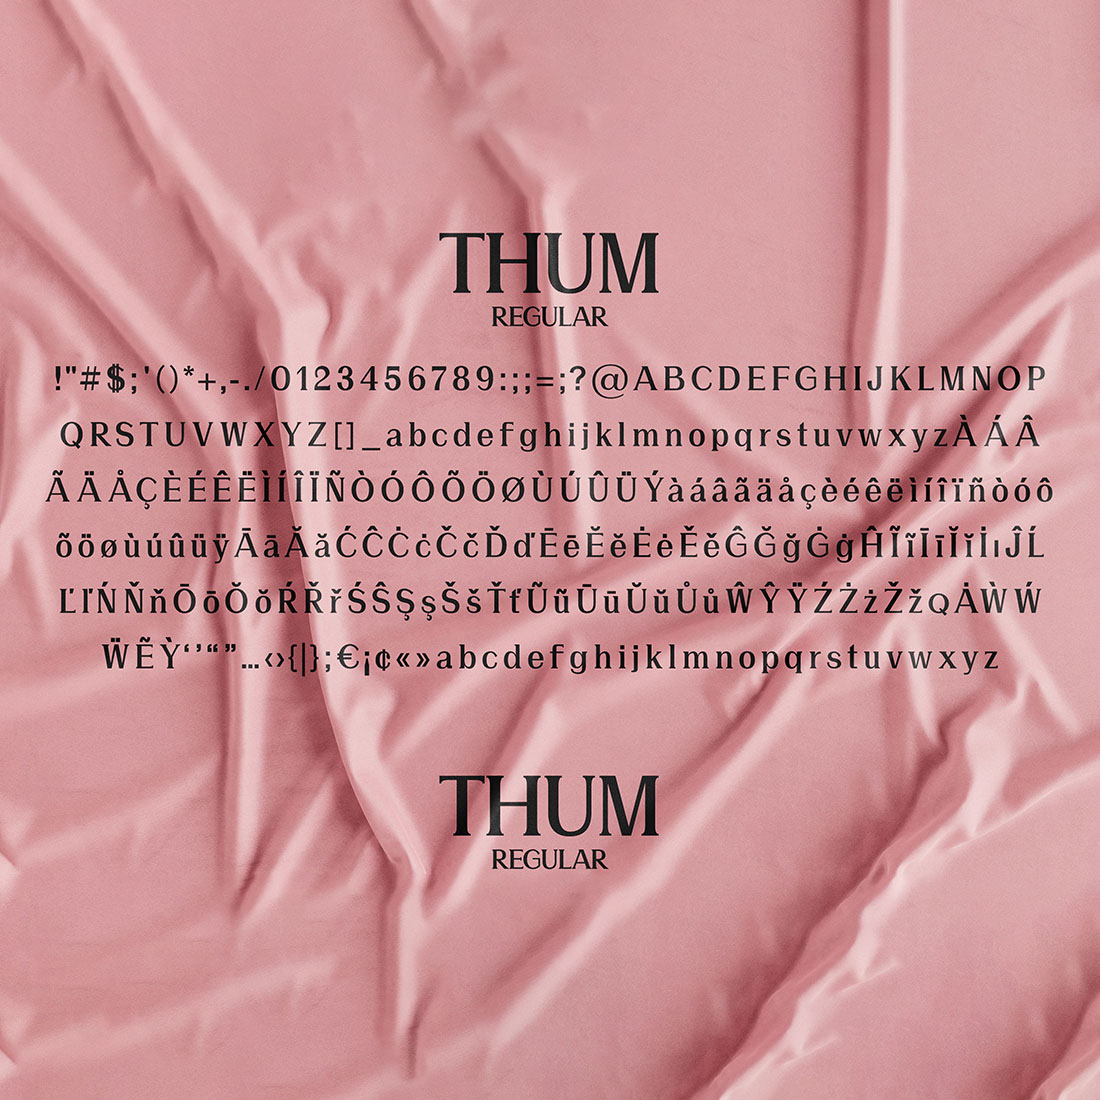 Thum Elegant Serif Font regular type preview.